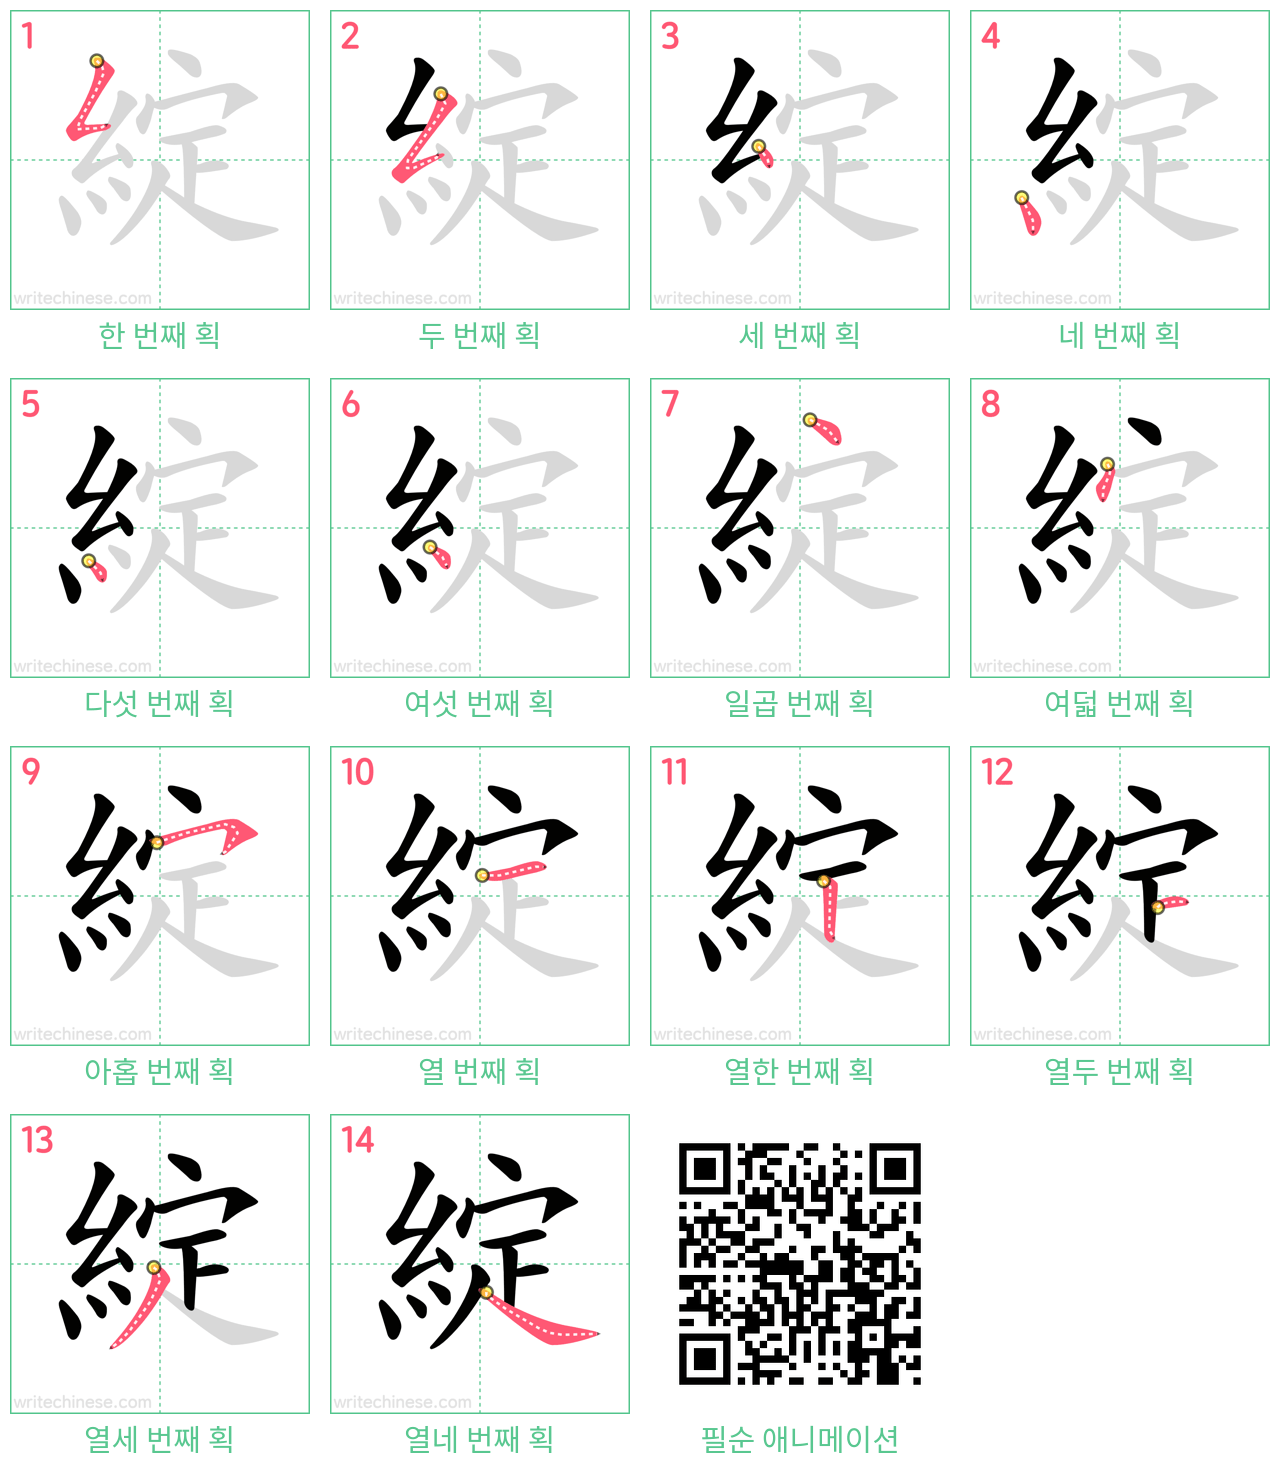 綻 step-by-step stroke order diagrams